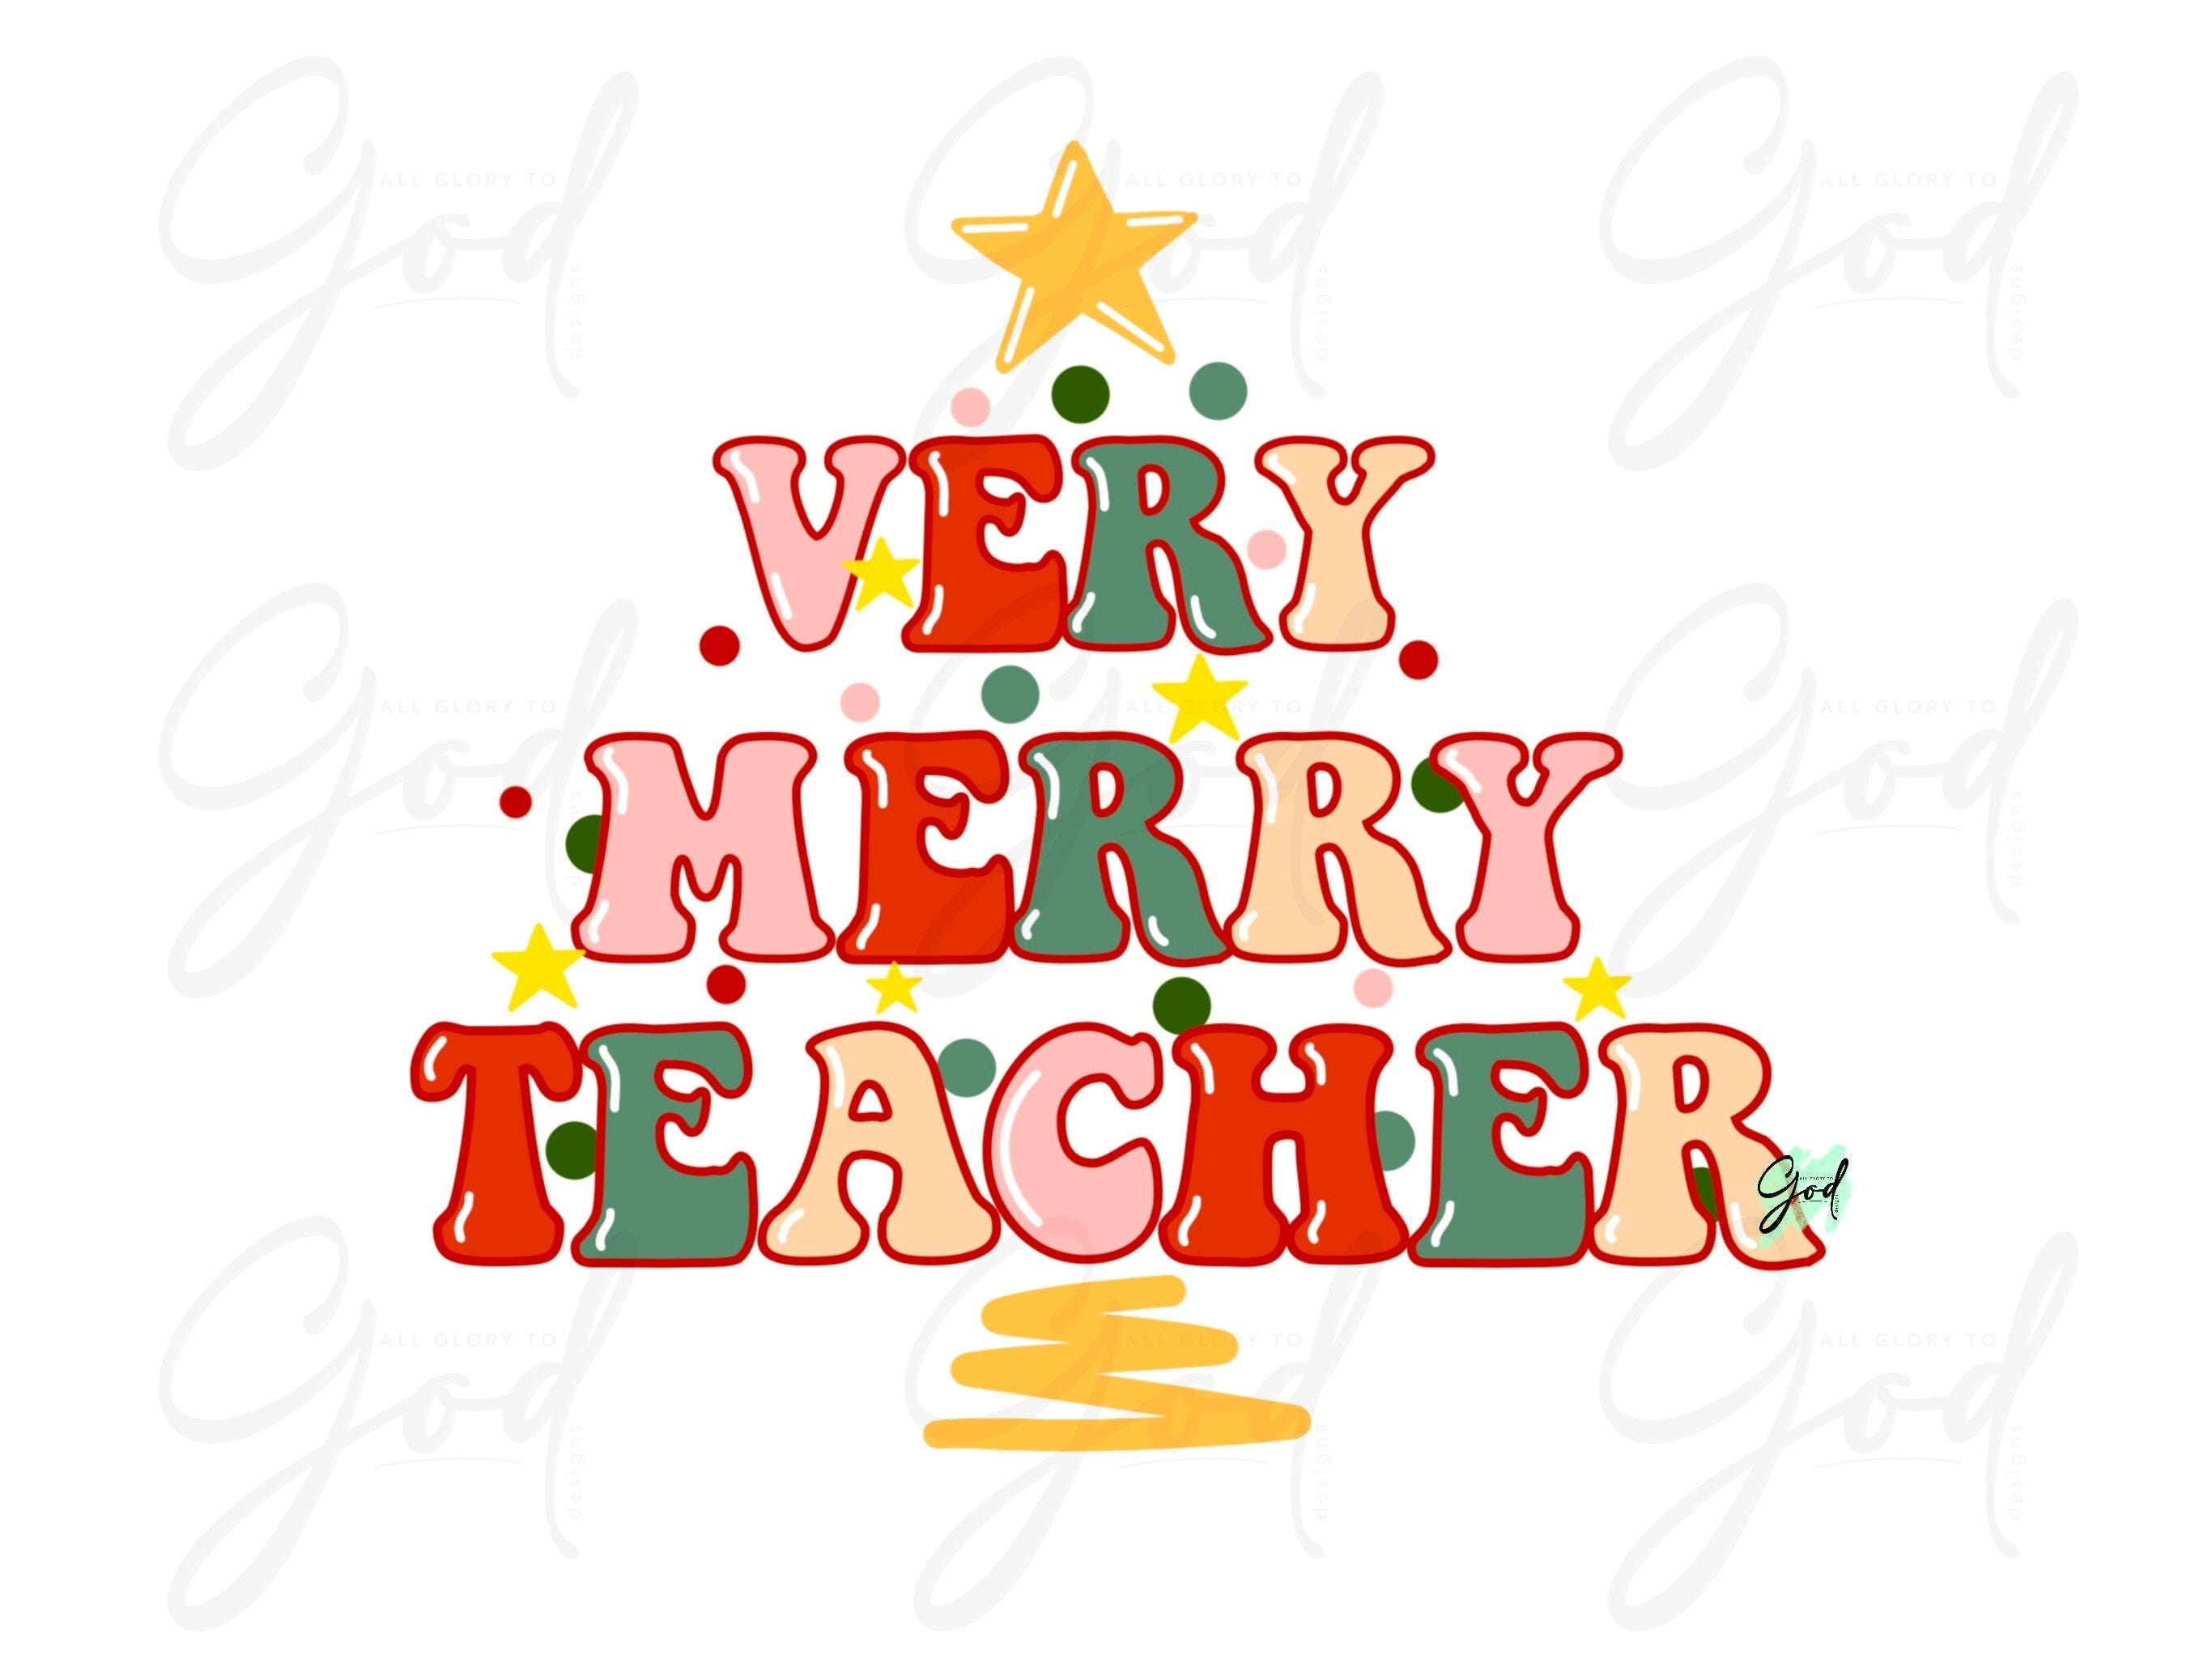 Very Merry teacher png,Christmas teacher shirt,png,Christian teacher png,Pdf,jpg,merry and bright,Pdf,teacher,Christmas cheer,merry teacher